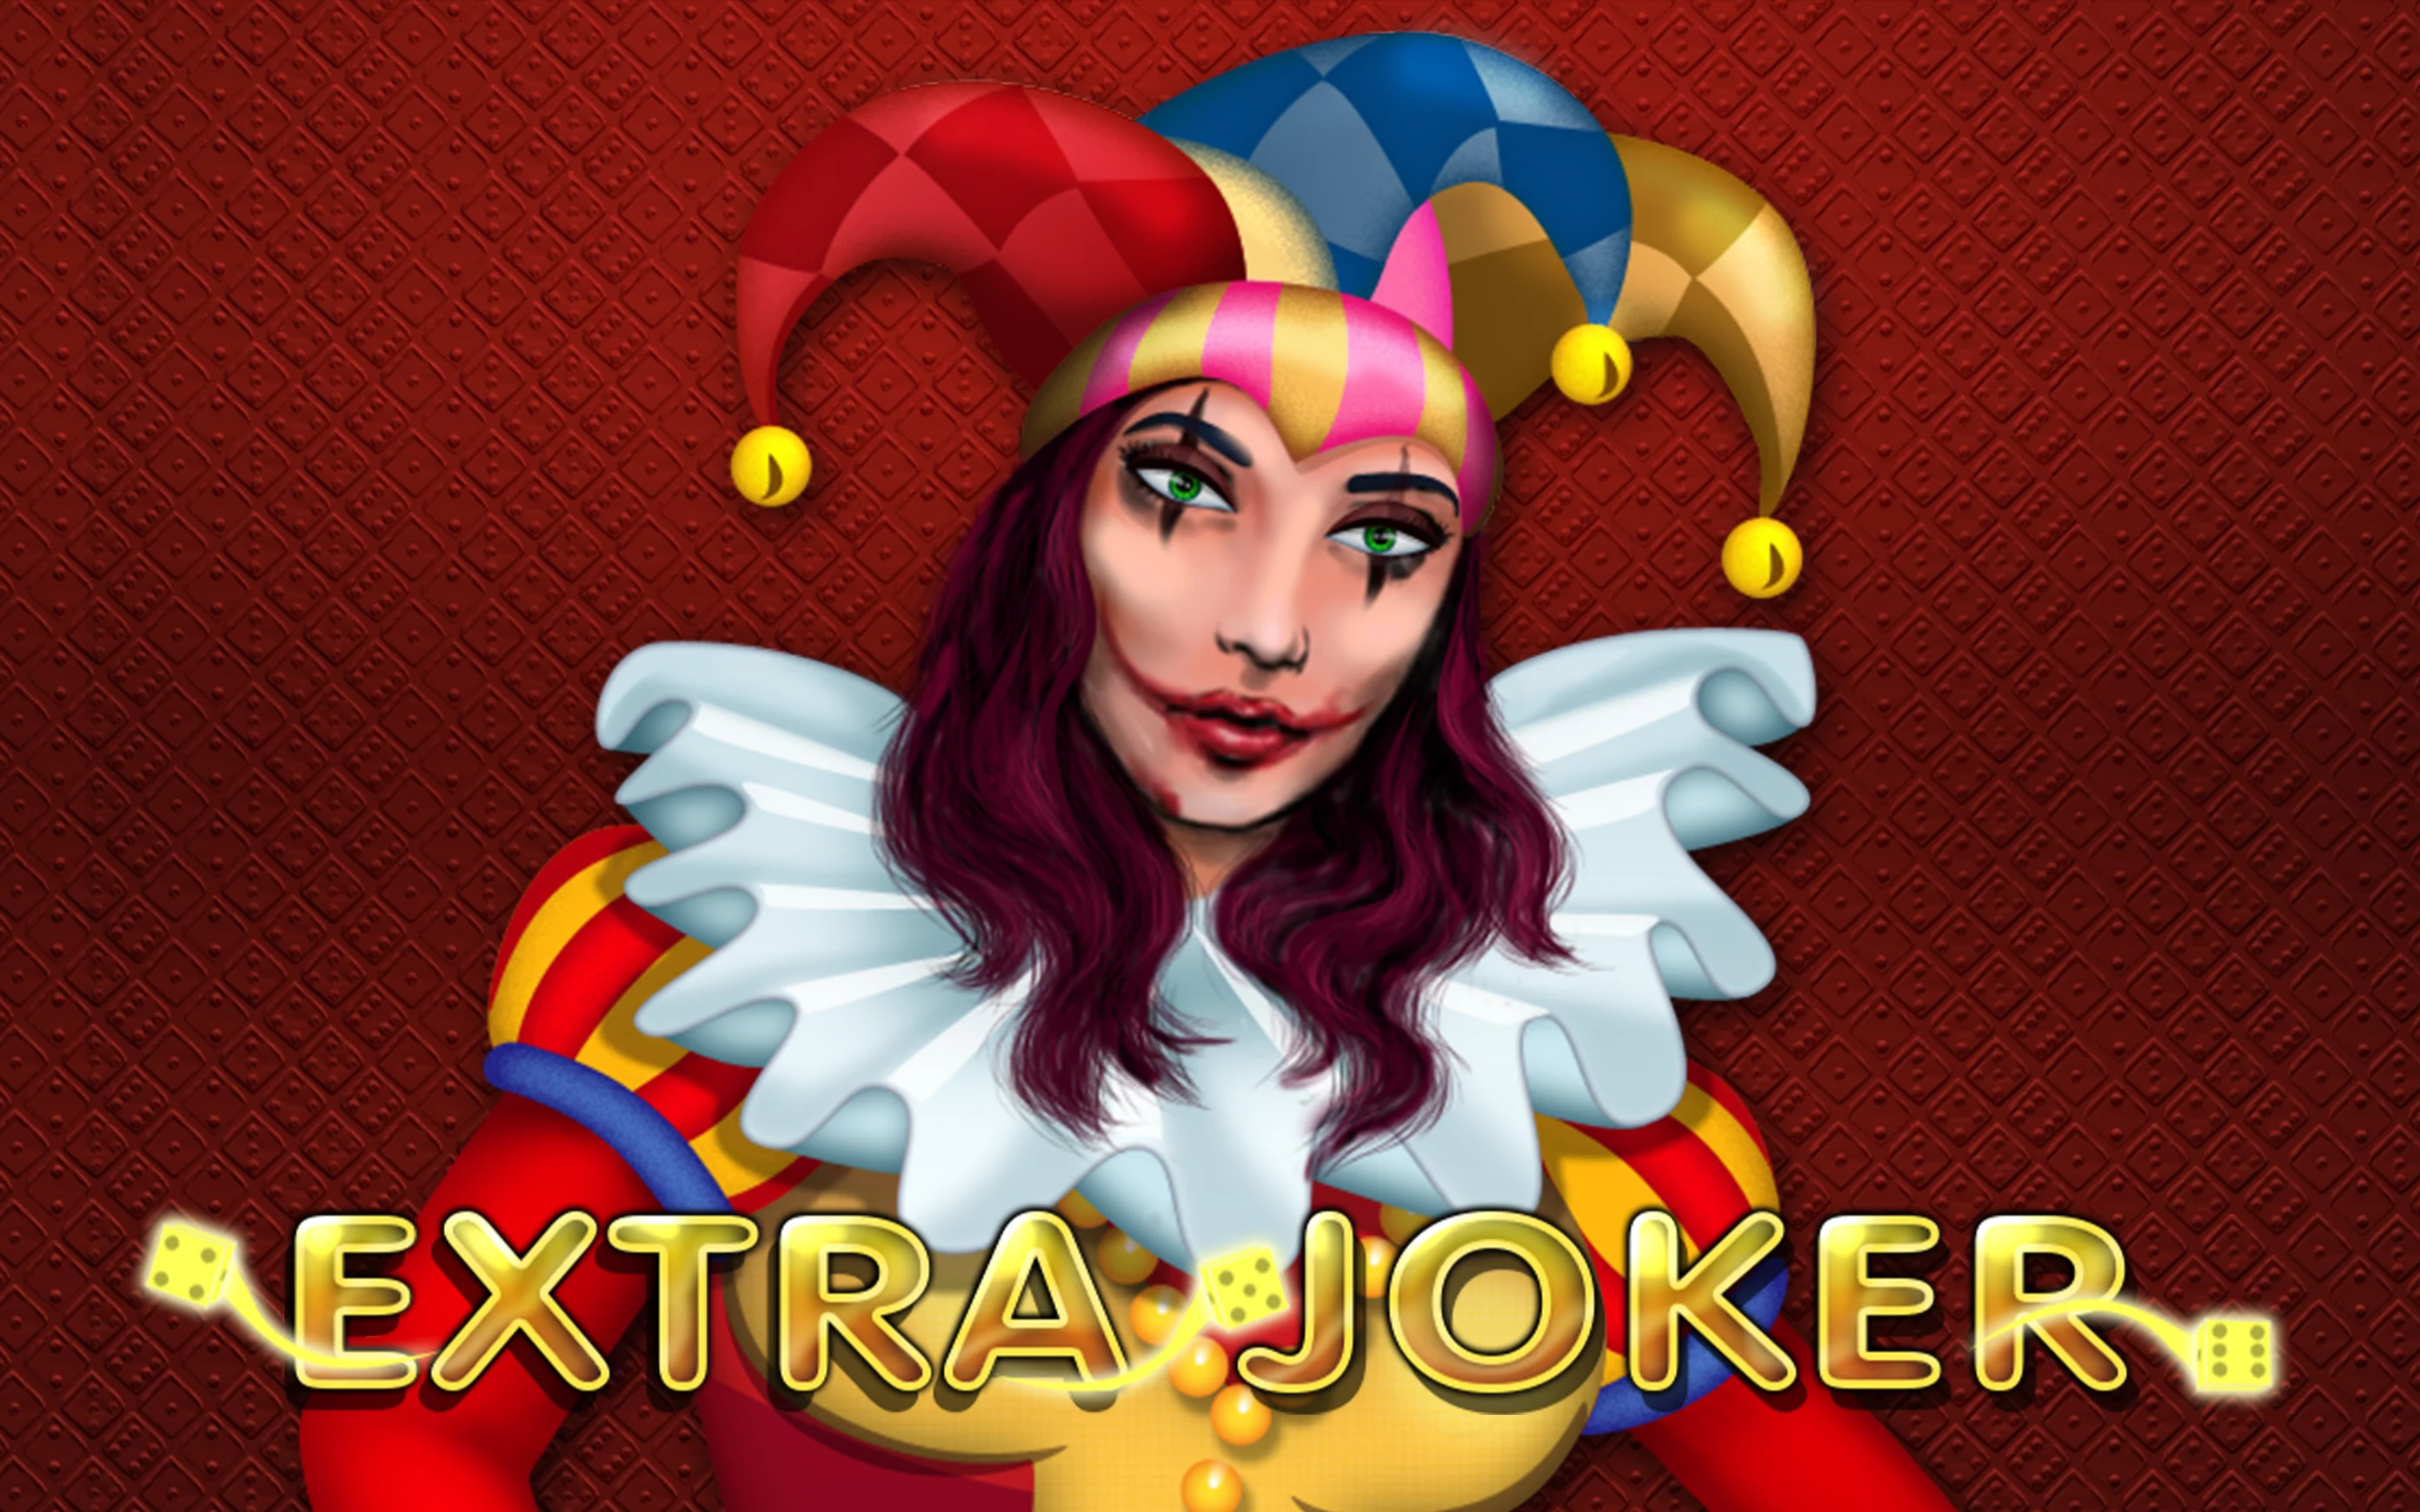 Play Extra Joker on Starcasino.be online casino